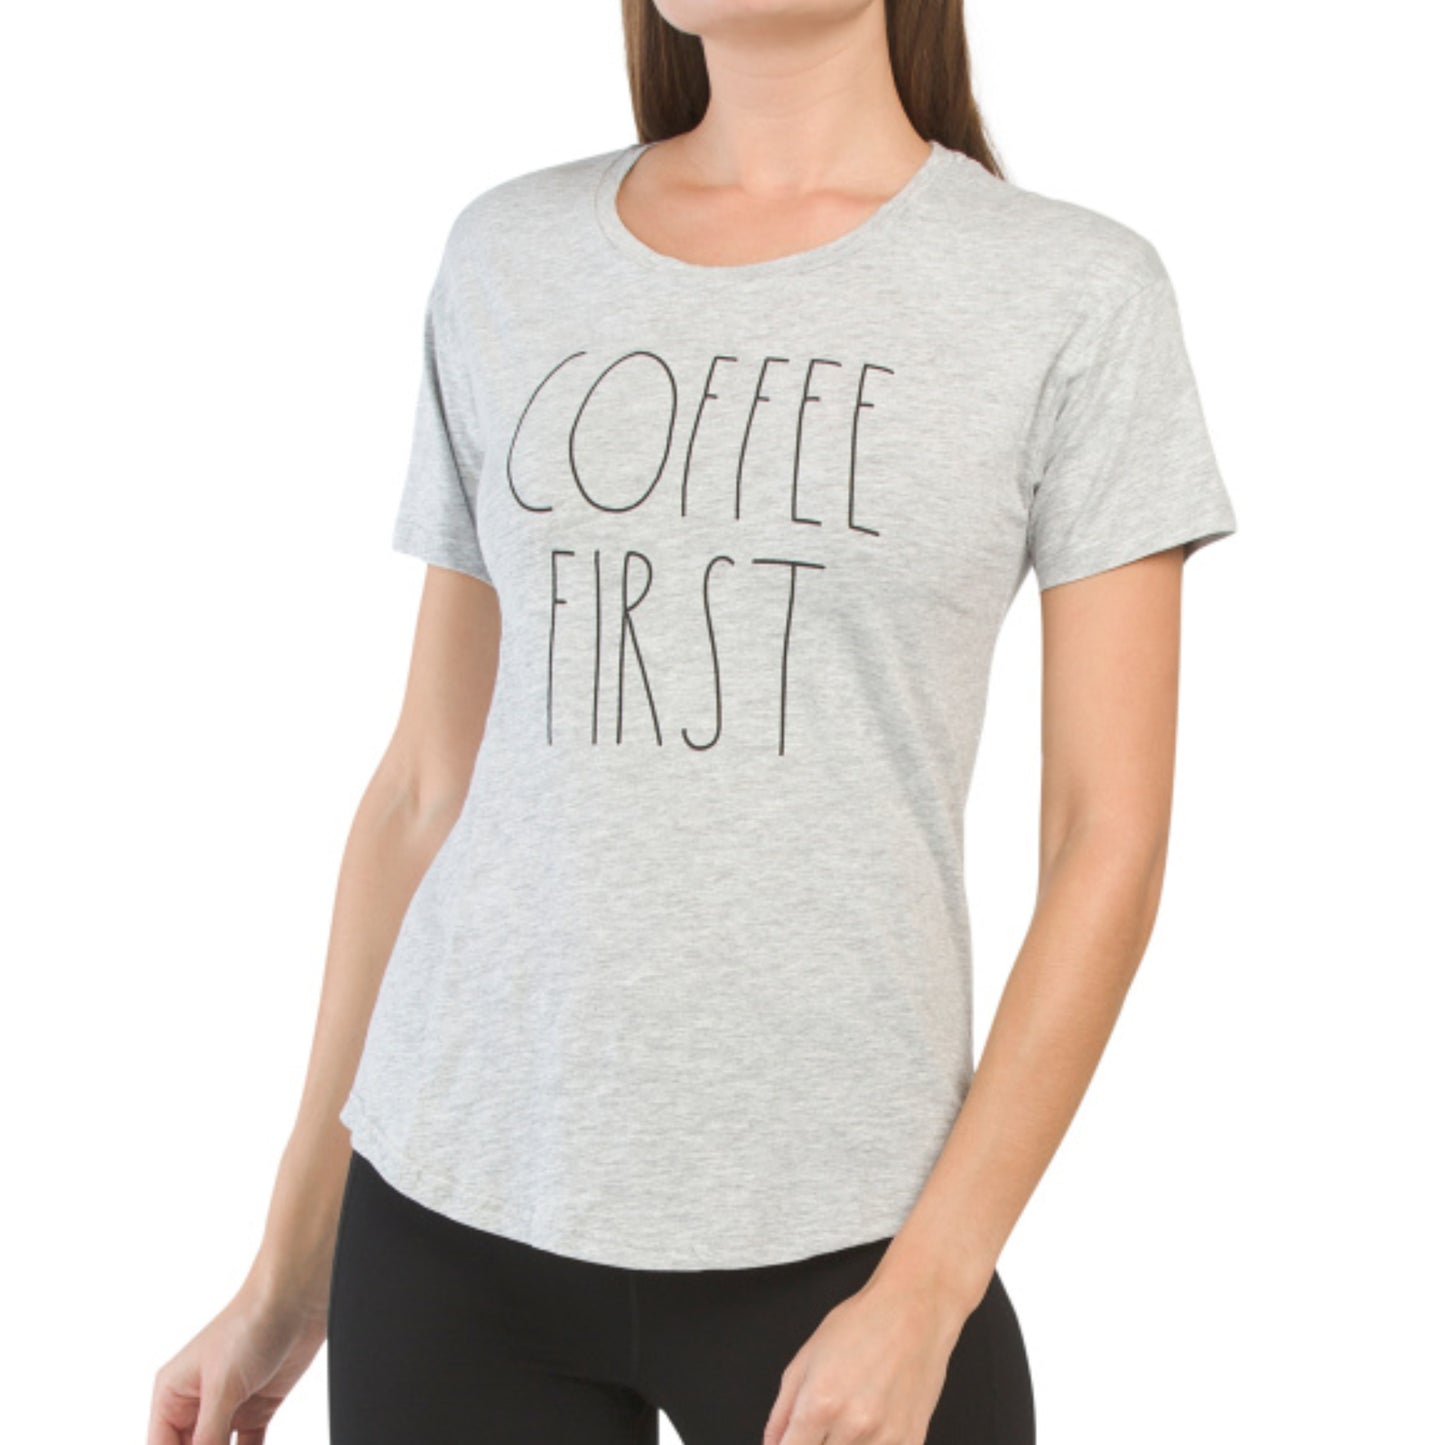 Rae Dunn Coffee First Cotton T-Shirt